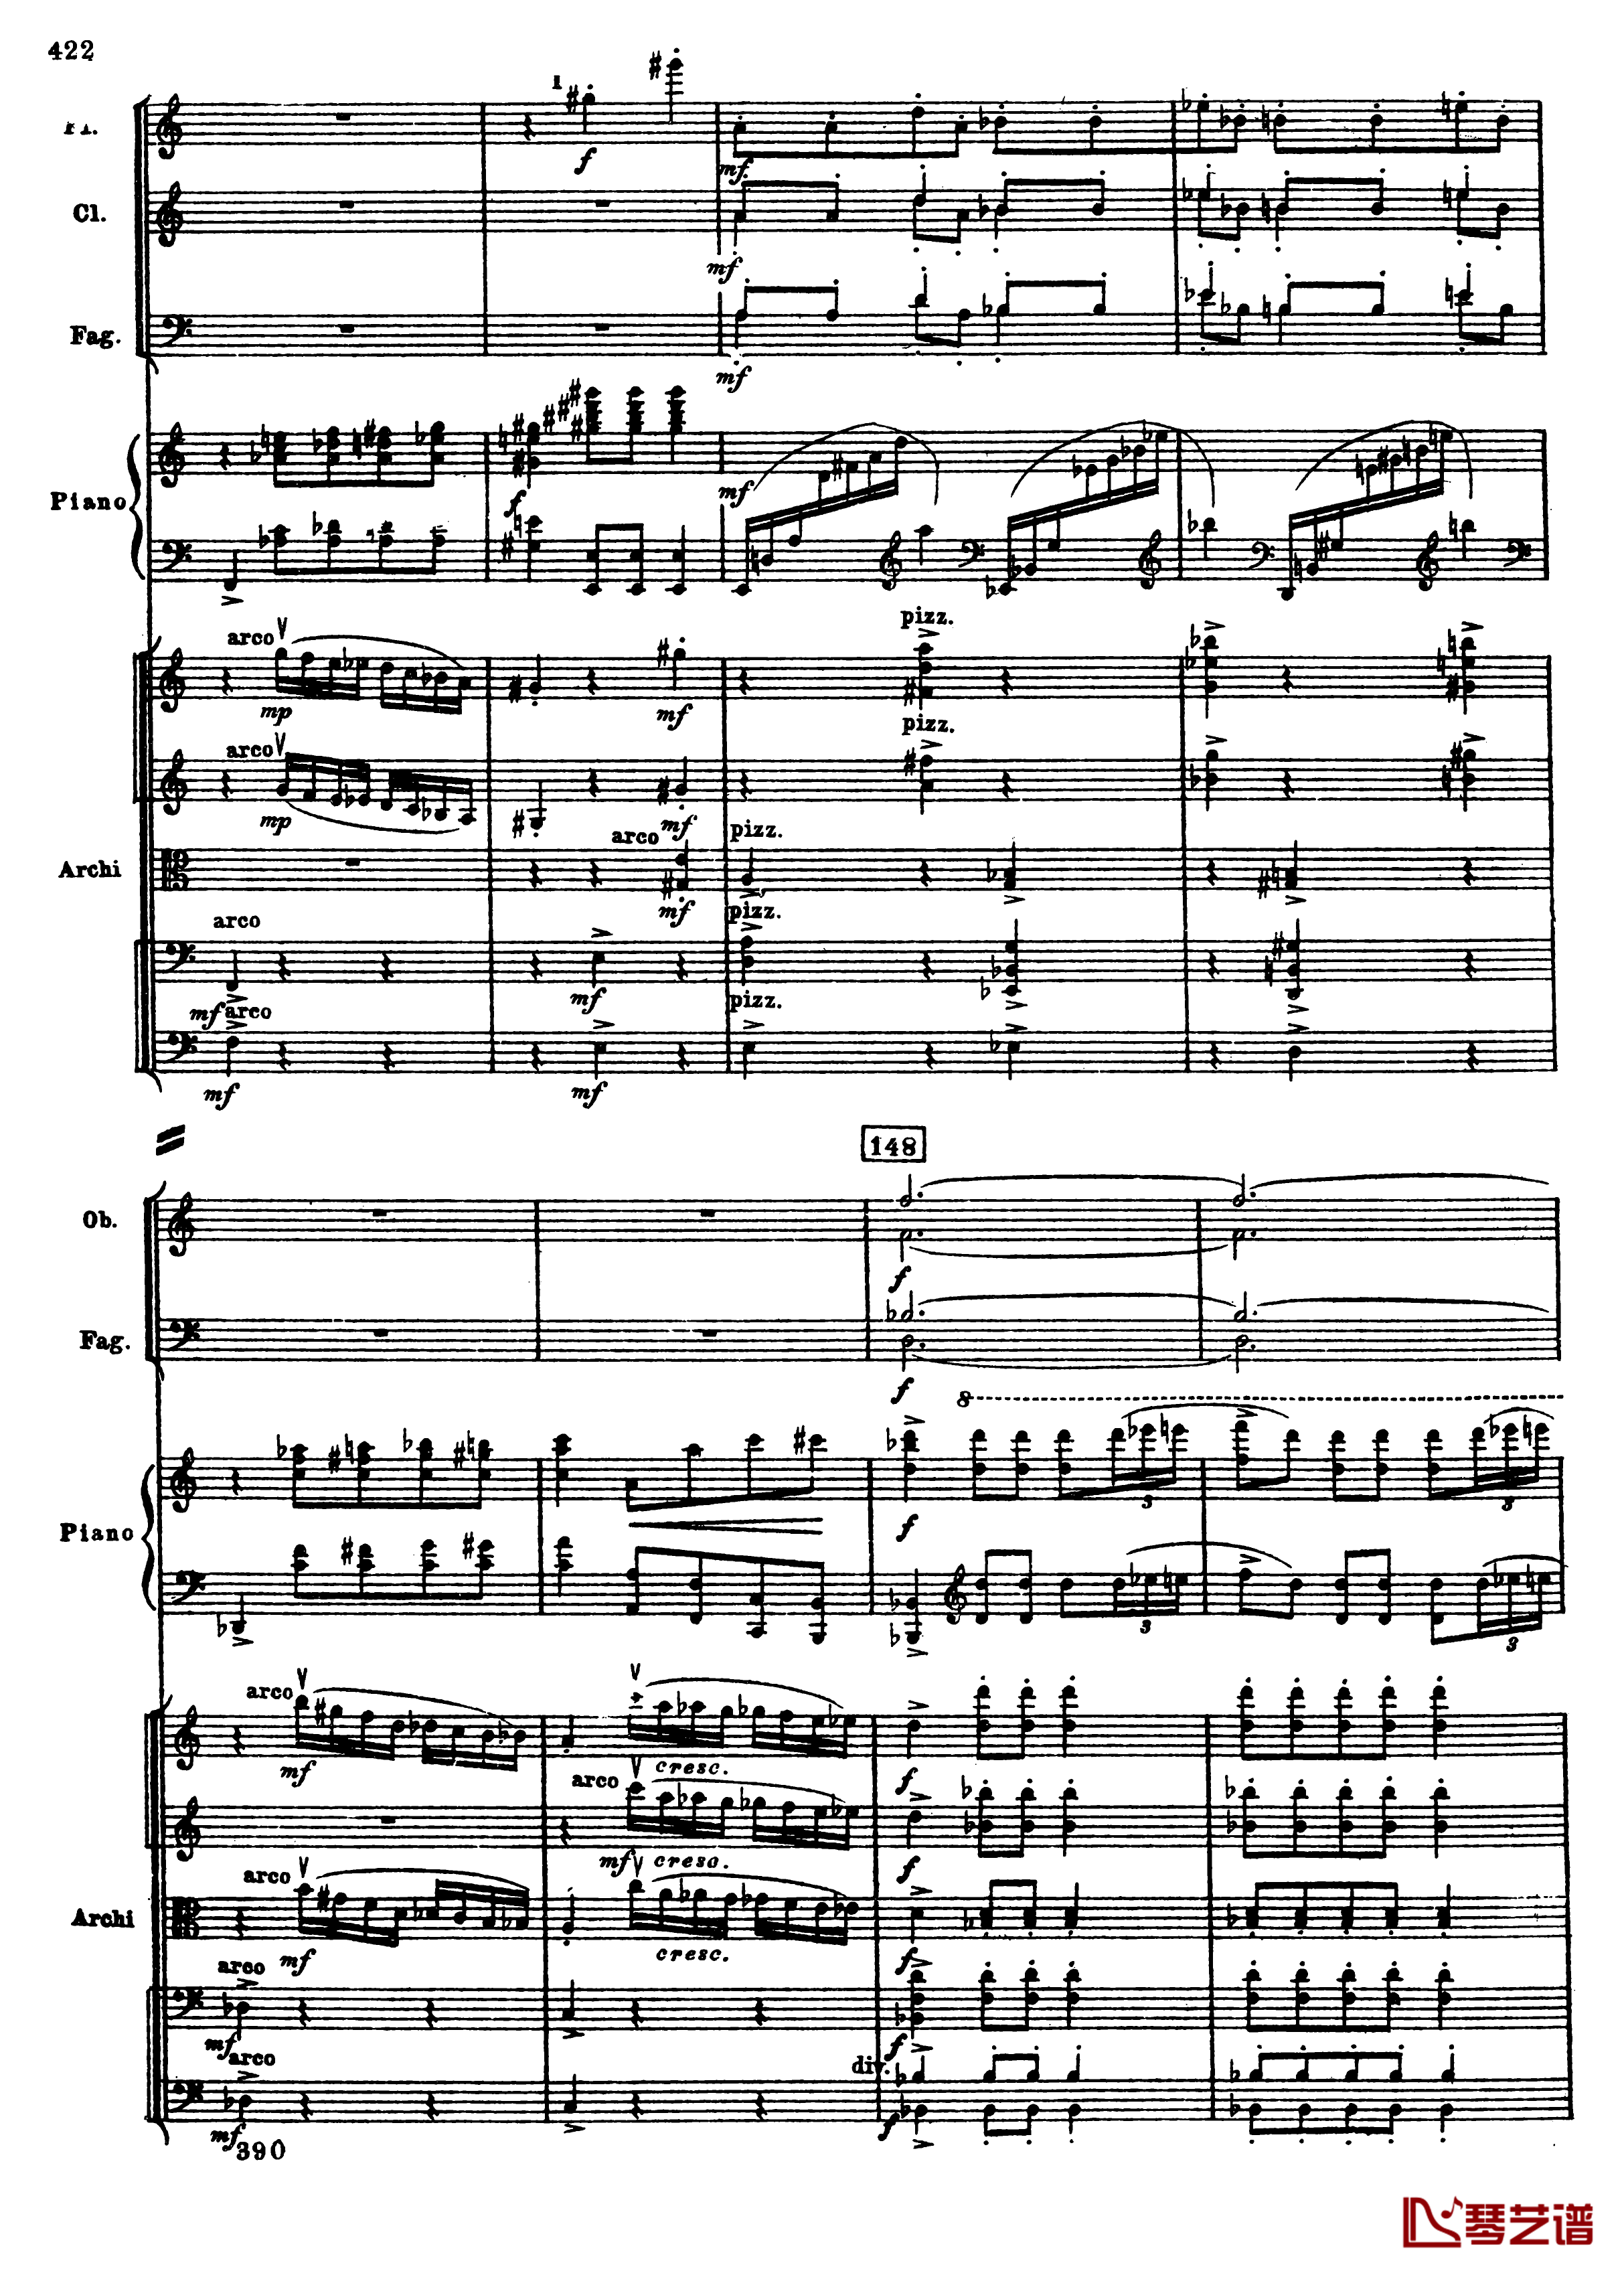 普罗科菲耶夫第三钢琴协奏曲钢琴谱-总谱-普罗科非耶夫154